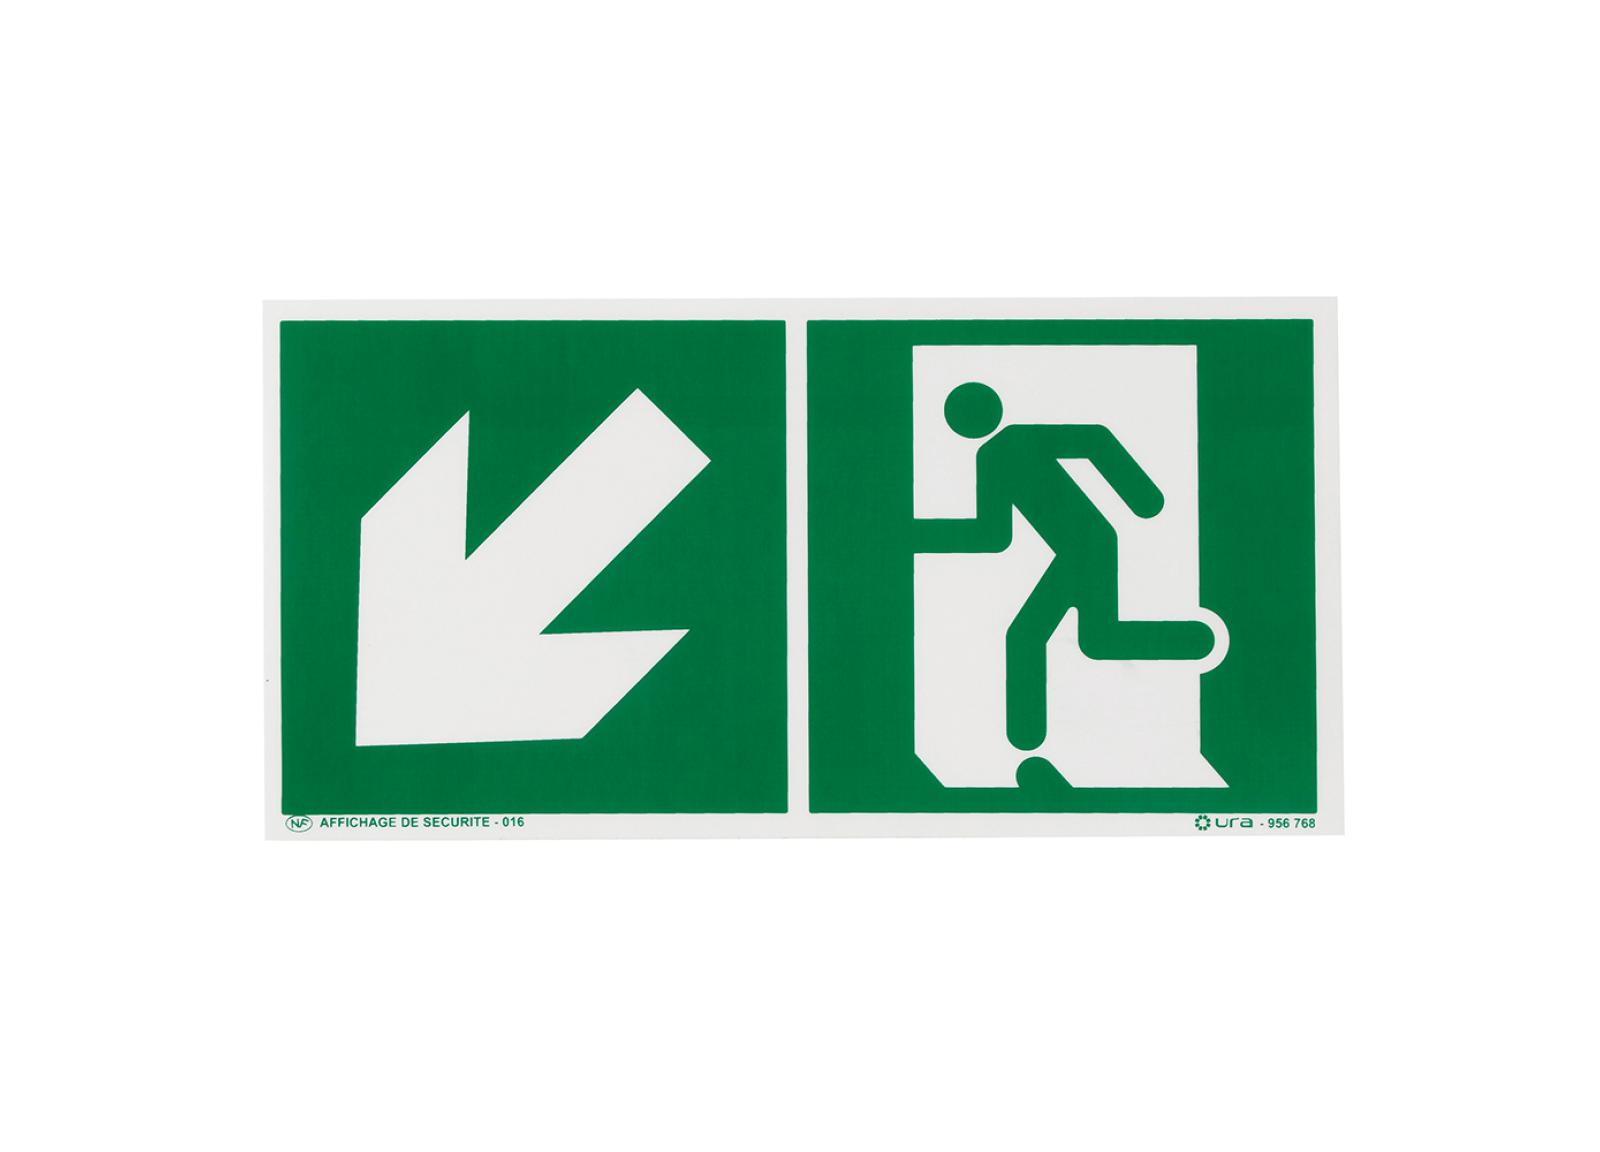 Pictogramme autocollant pour signalisation évacuation avec symbole flèche vers le bas à gauche